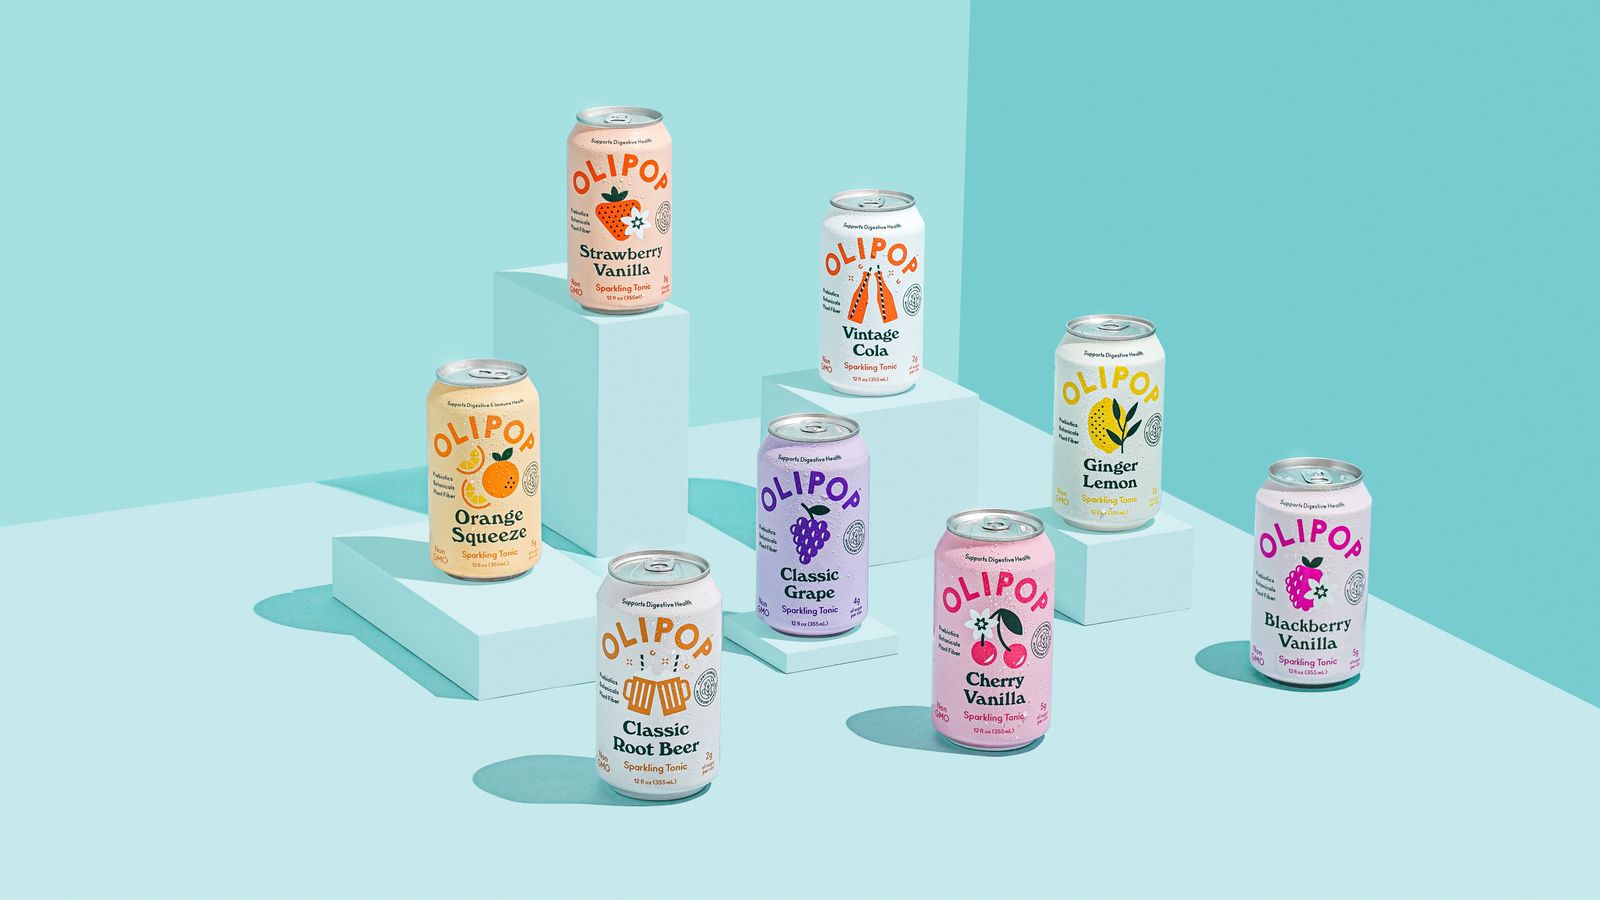 8 罐 Olipop 起泡滋补饮料，有 8 种不同口味，浅蓝色背景。